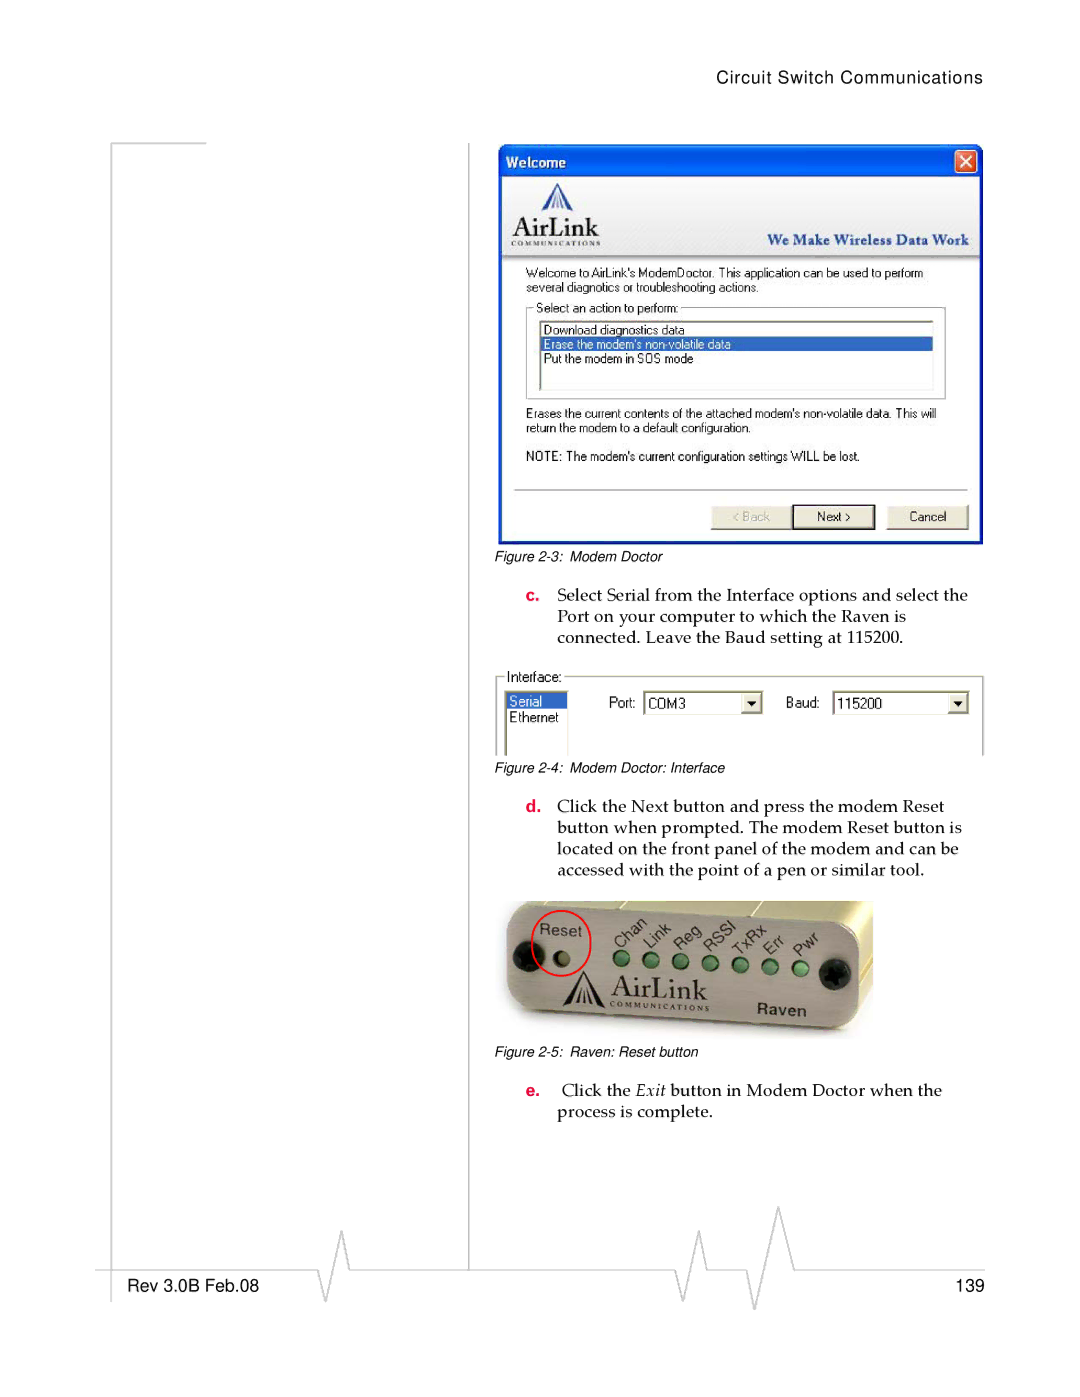 Sierra Wireless 20070914 manual Rev 3.0B Feb.08 139 